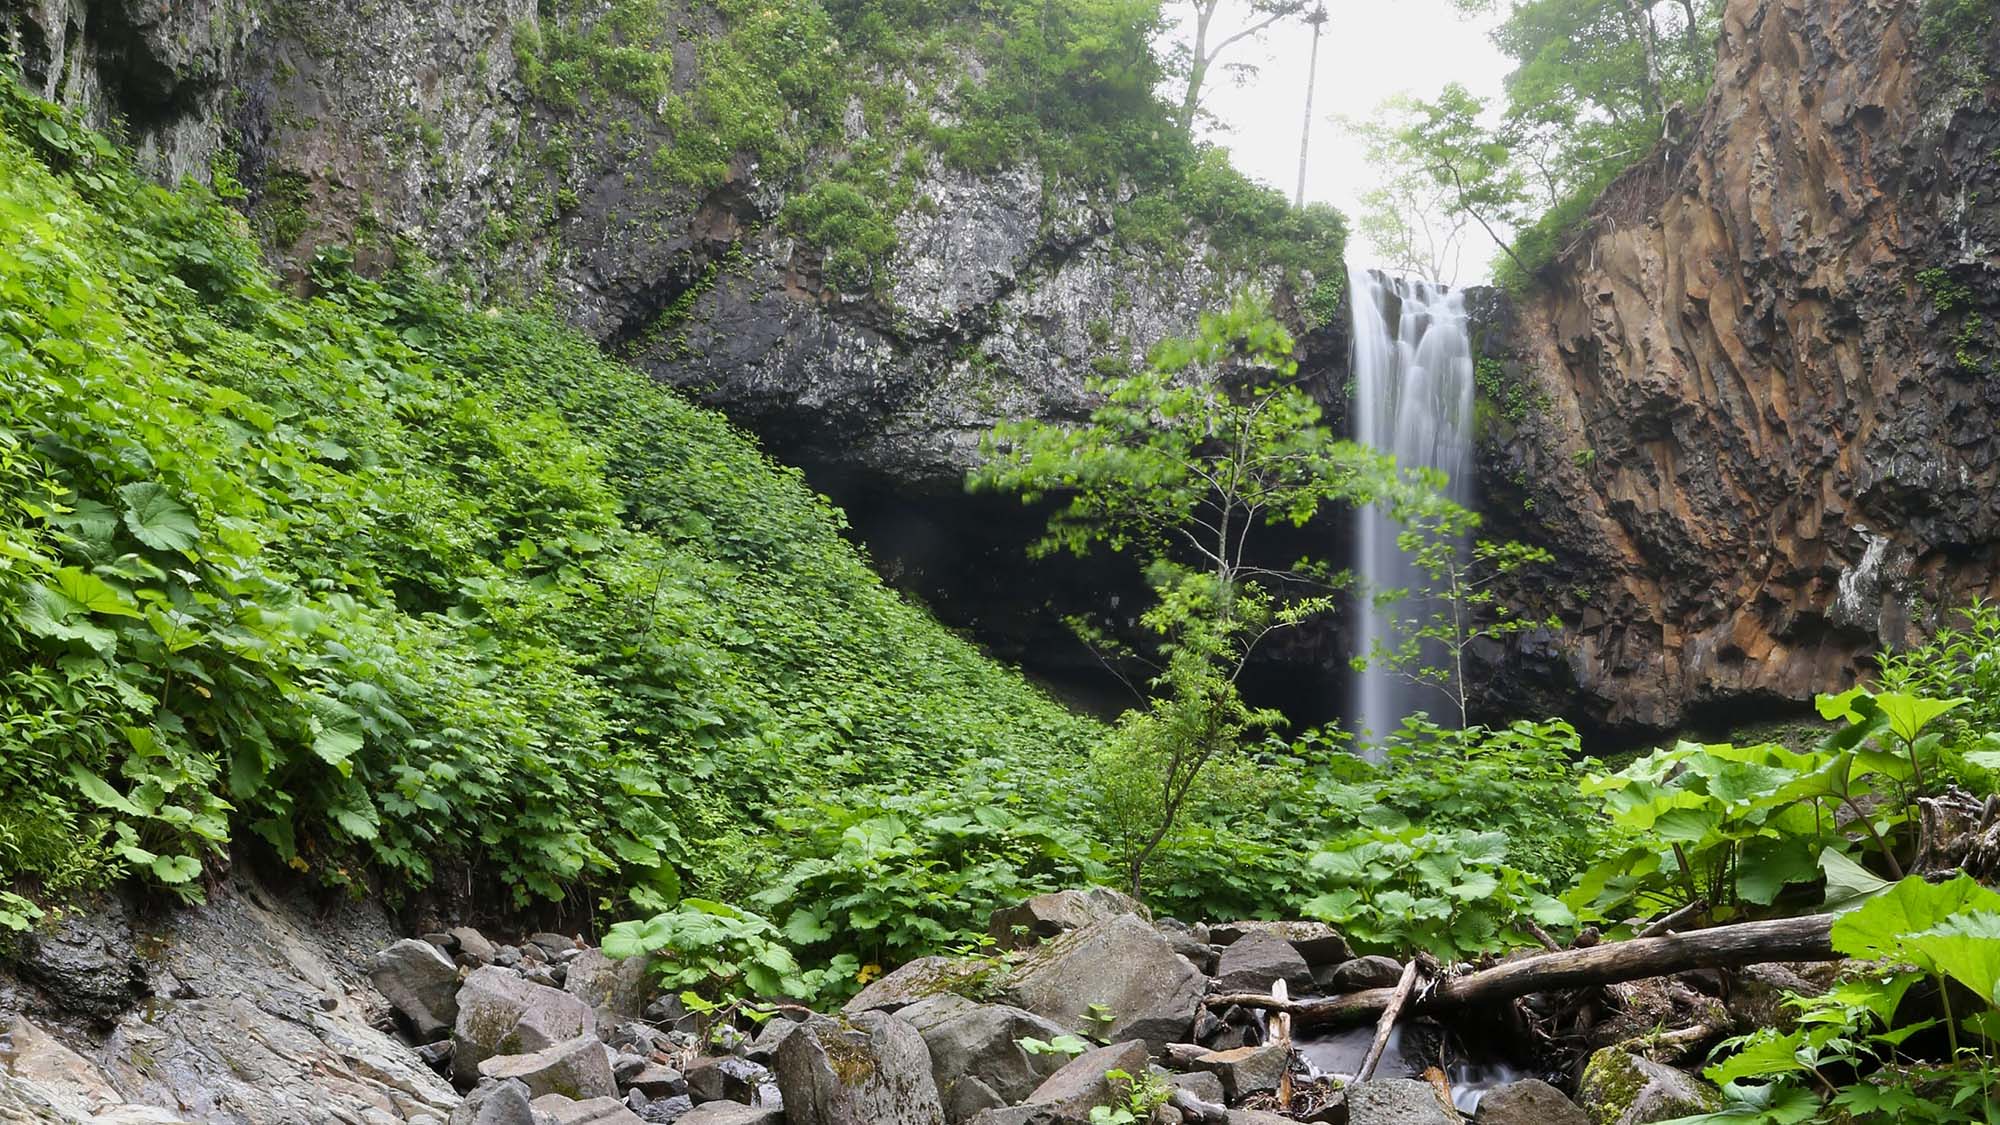 ・【クテクンの滝】中標津町にある秘境クテクンの滝、人の手が入っていない自然がそのまま残っています